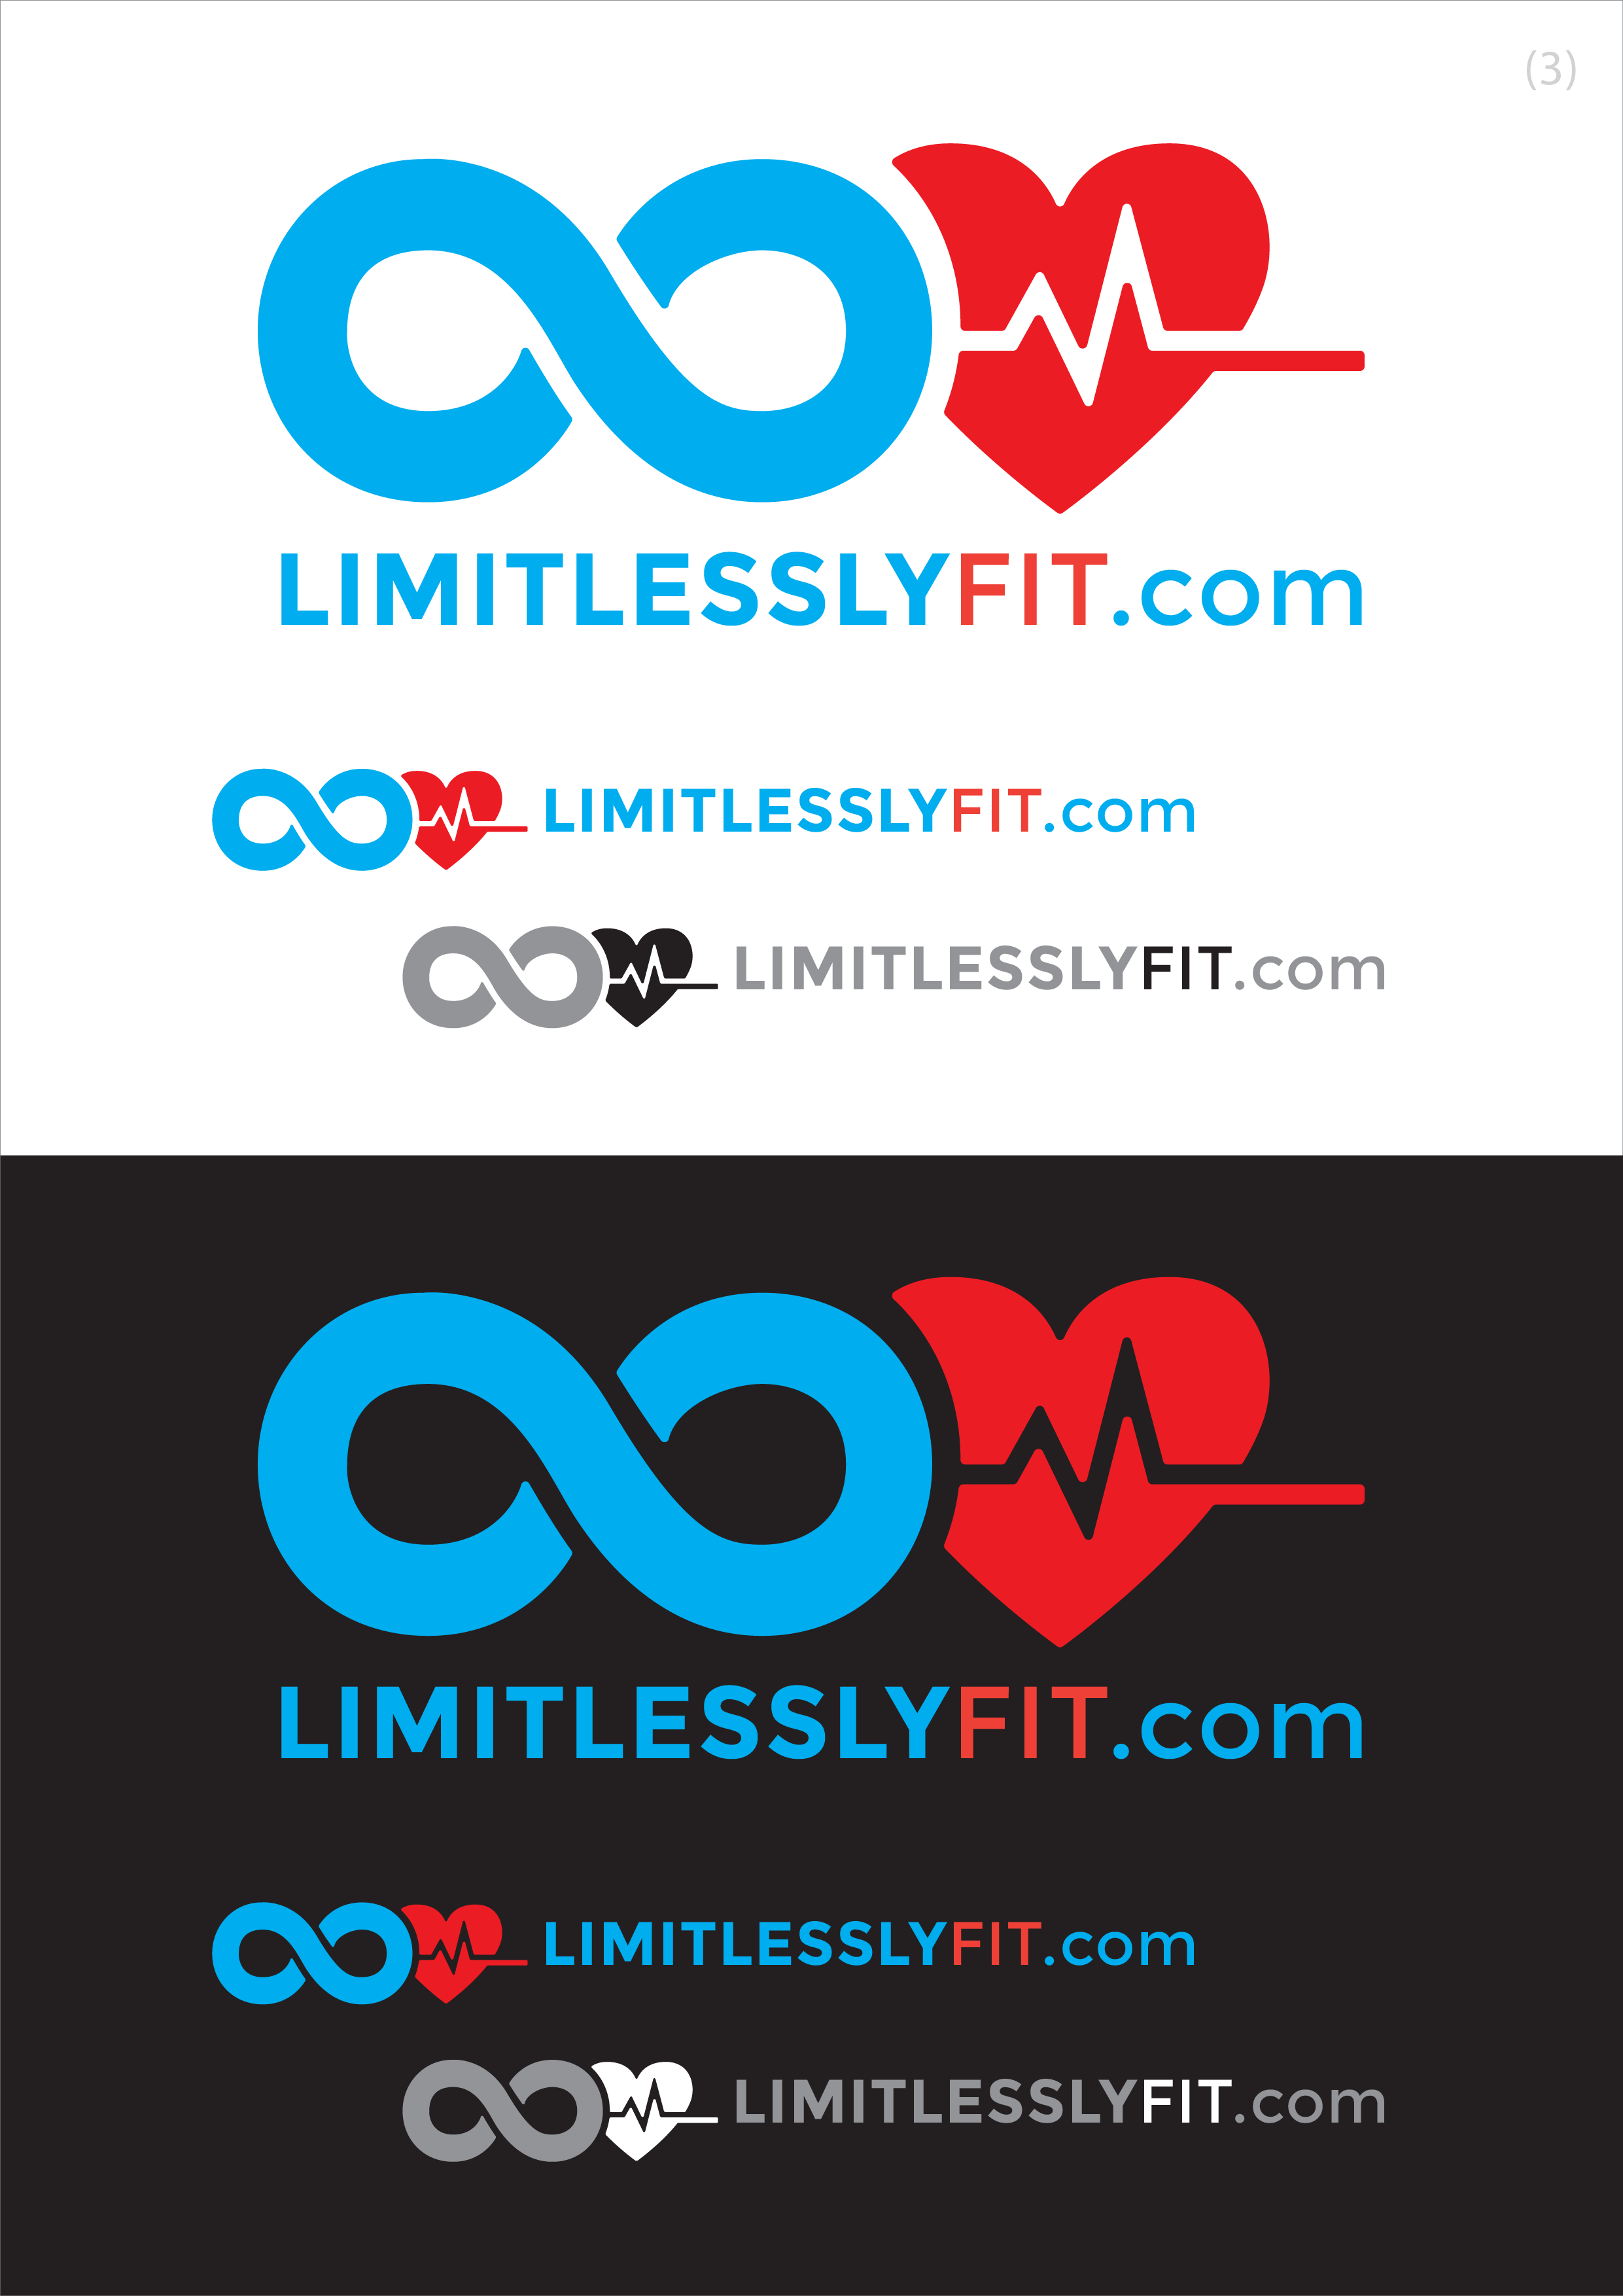 LimitlesslyFit logo3.png